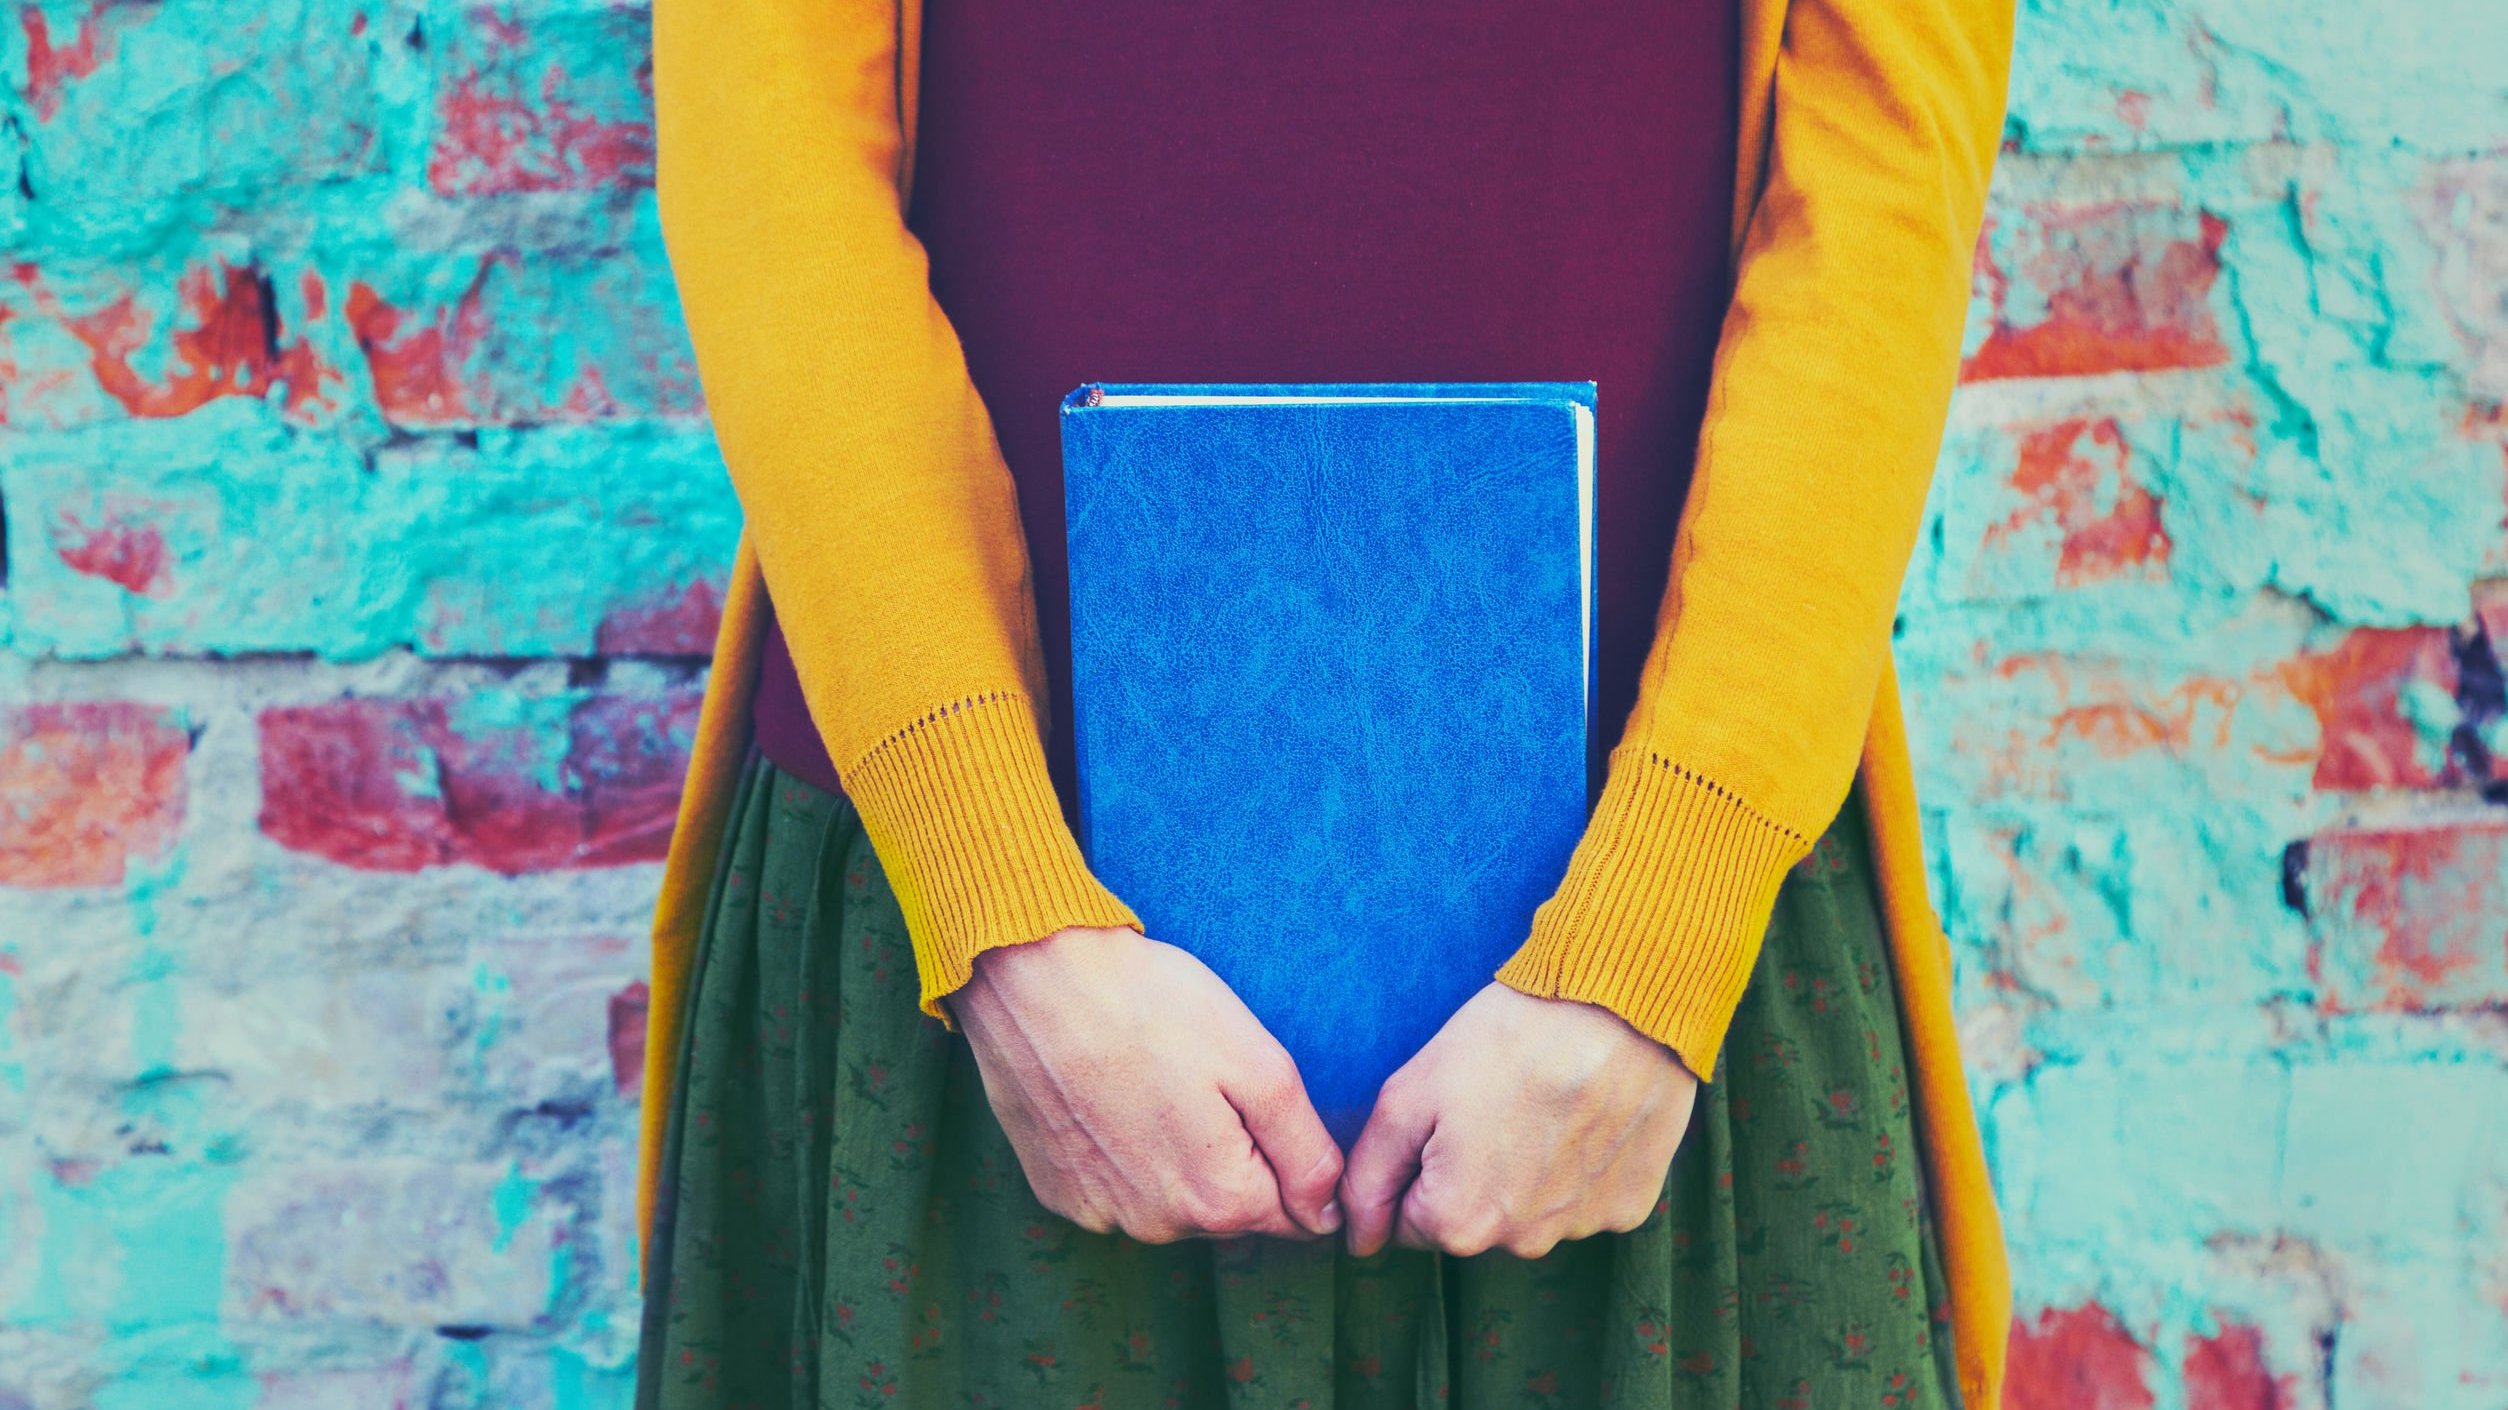 Mulher branca vestido roupa coloridas enquanto segura um livro azul.